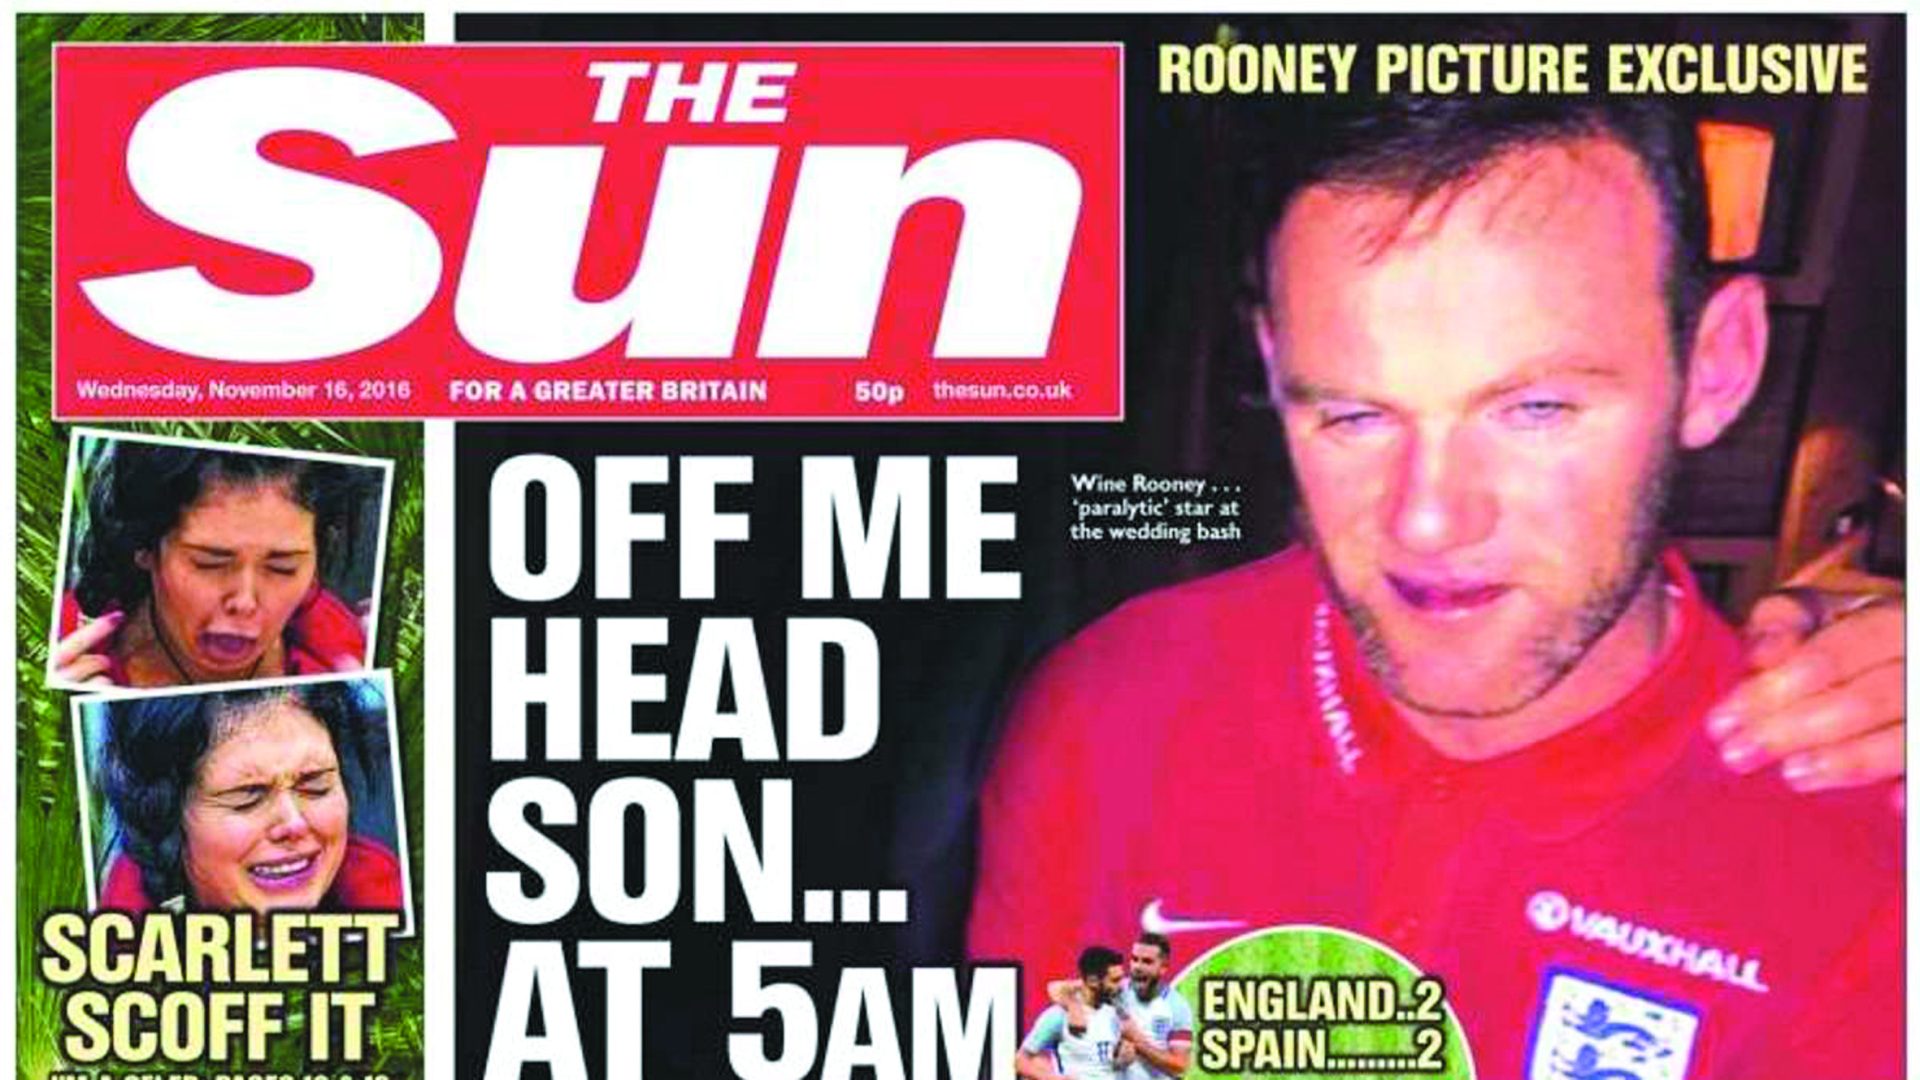 Inglaterra chocada com novas imagens da bebedeira de Rooney